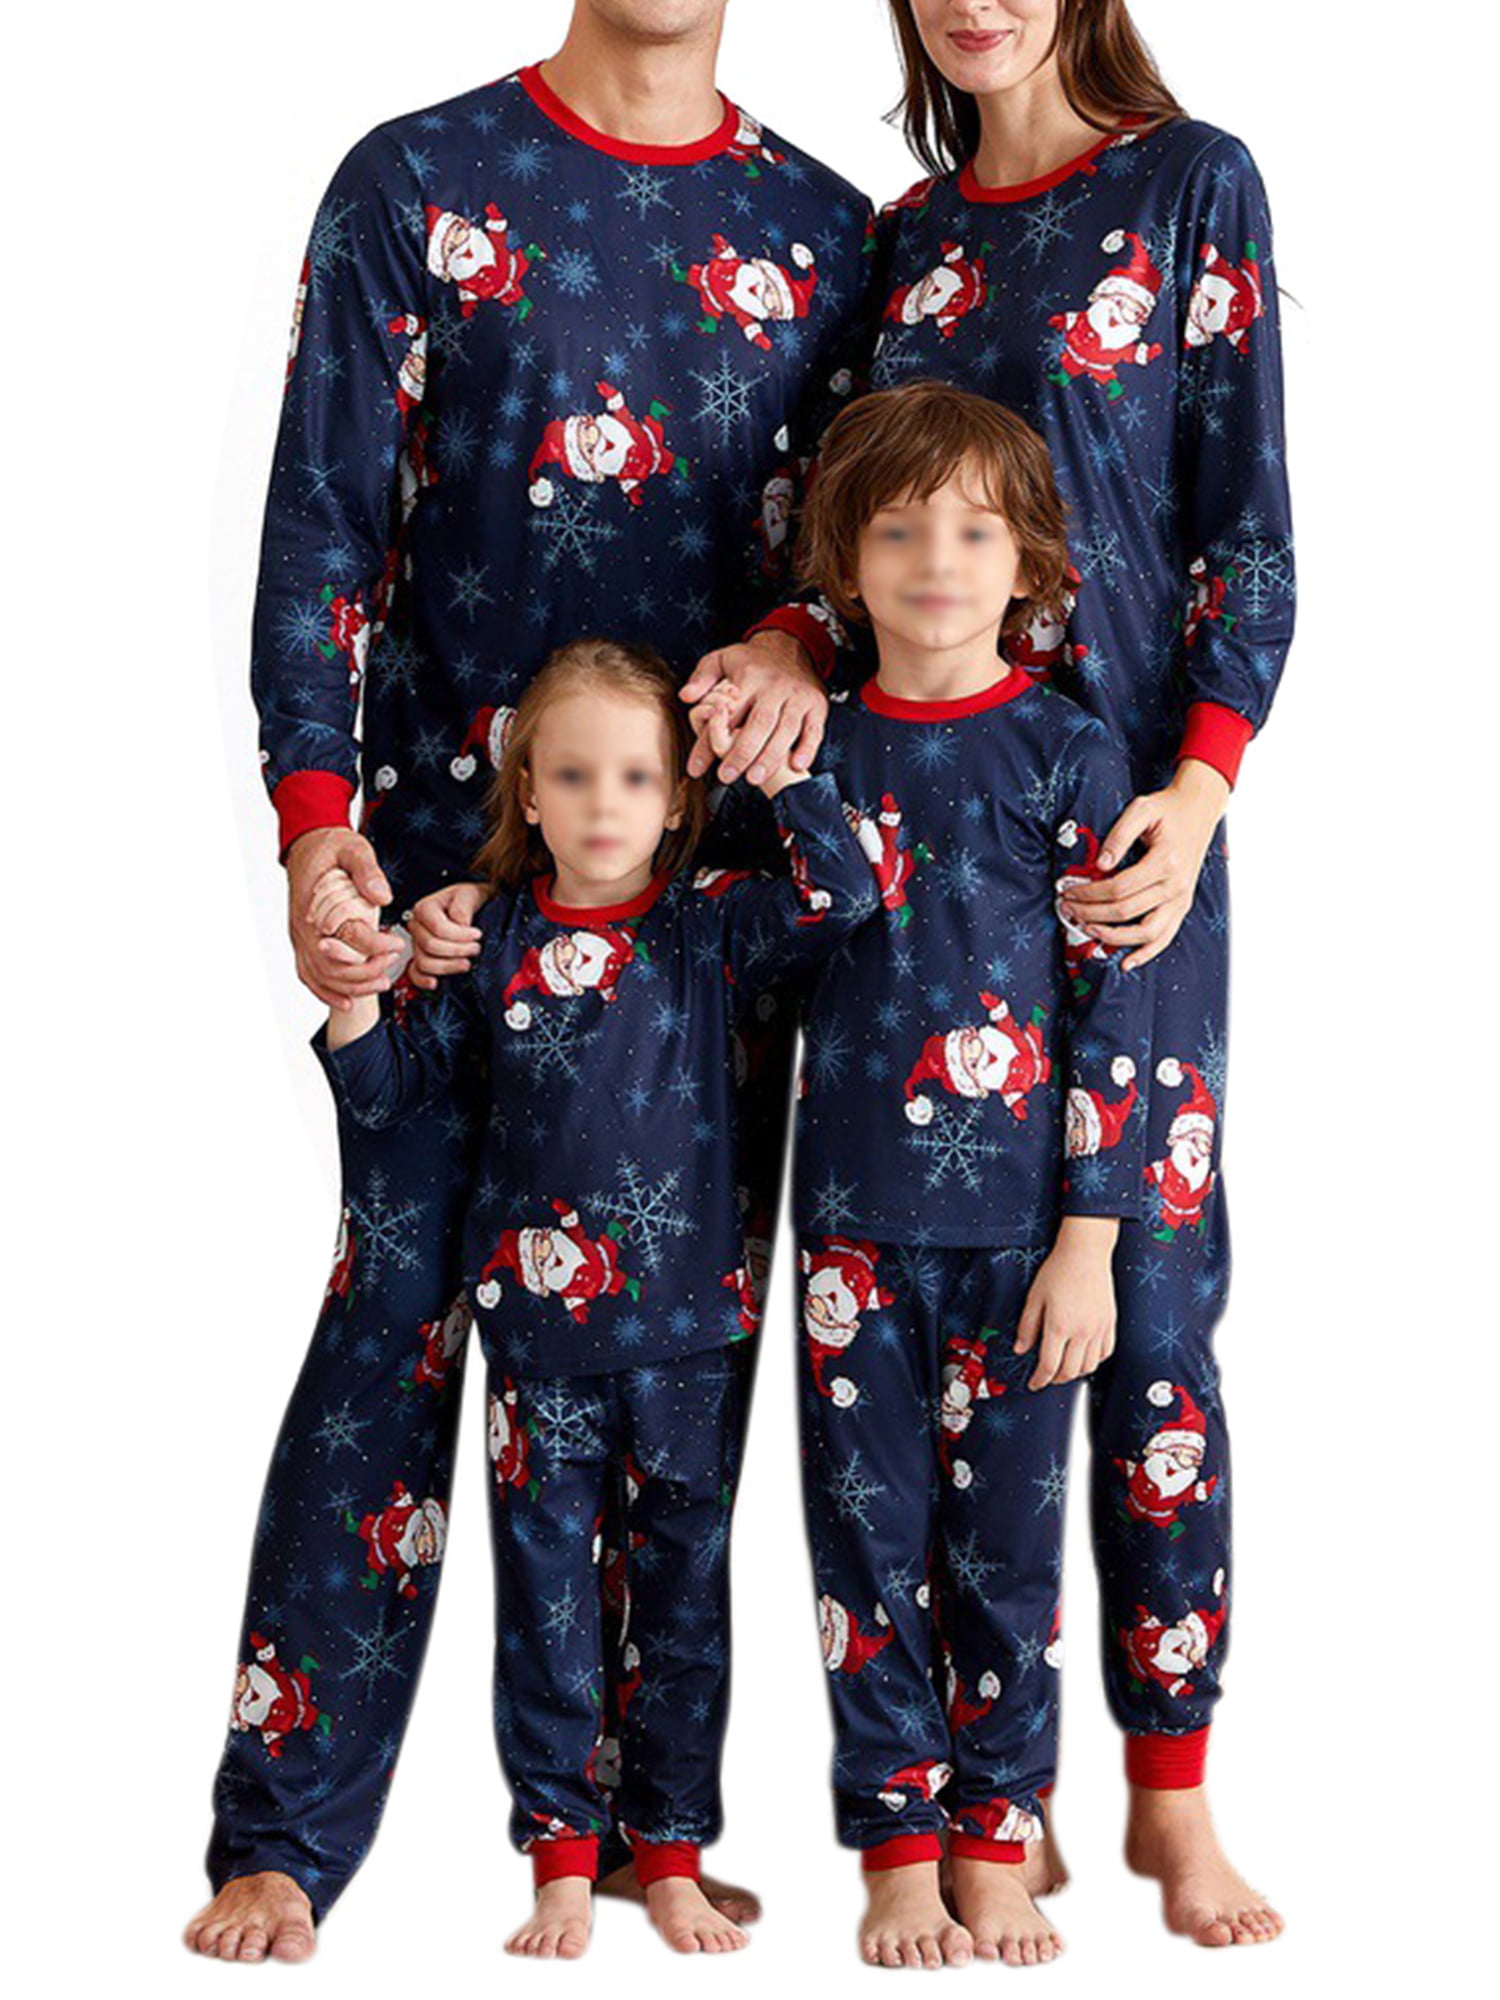 Borlai Ensemble Pyjama Noël Vêtement de Nuit Parent-Enfant Pyjama NoëL Manches Longues Top et Pantalon Famille Pyjamas